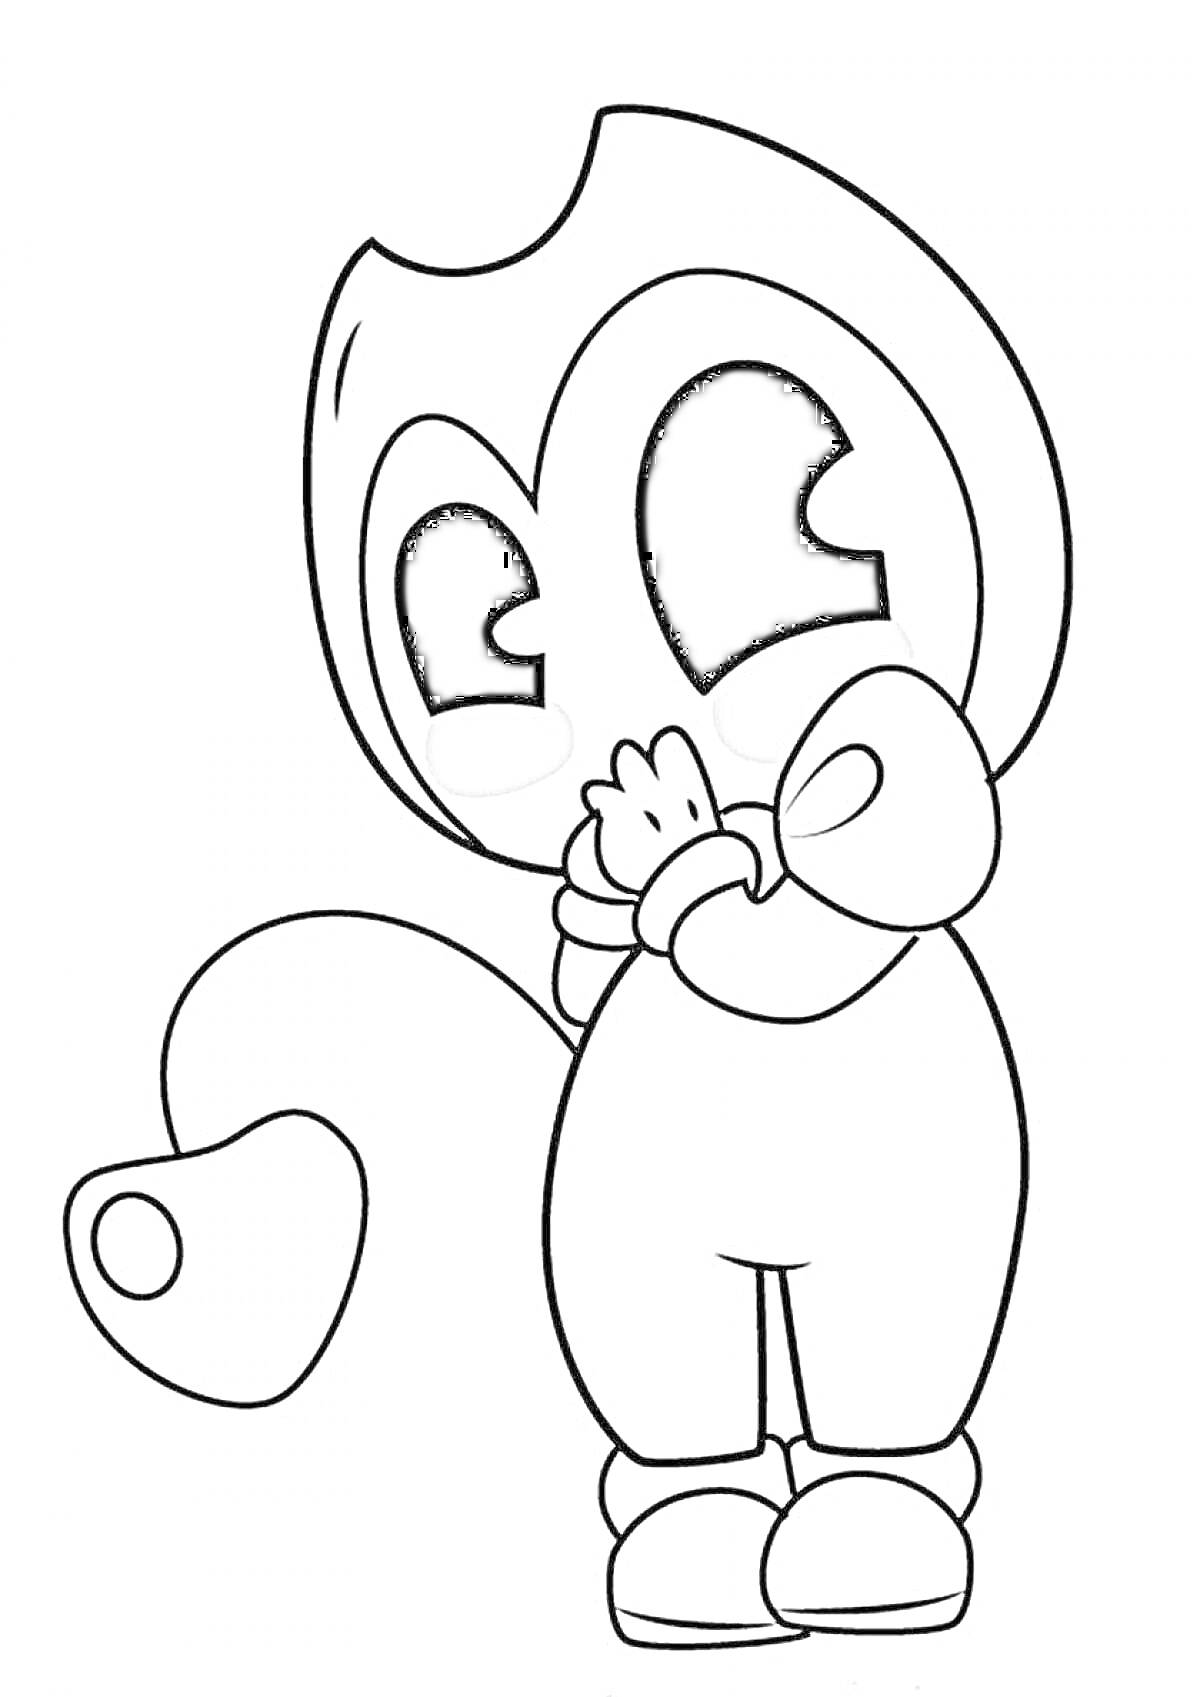 Раскраска Чиби персонаж Бенди с сердцем на хвосте, в позе с сложенными руками